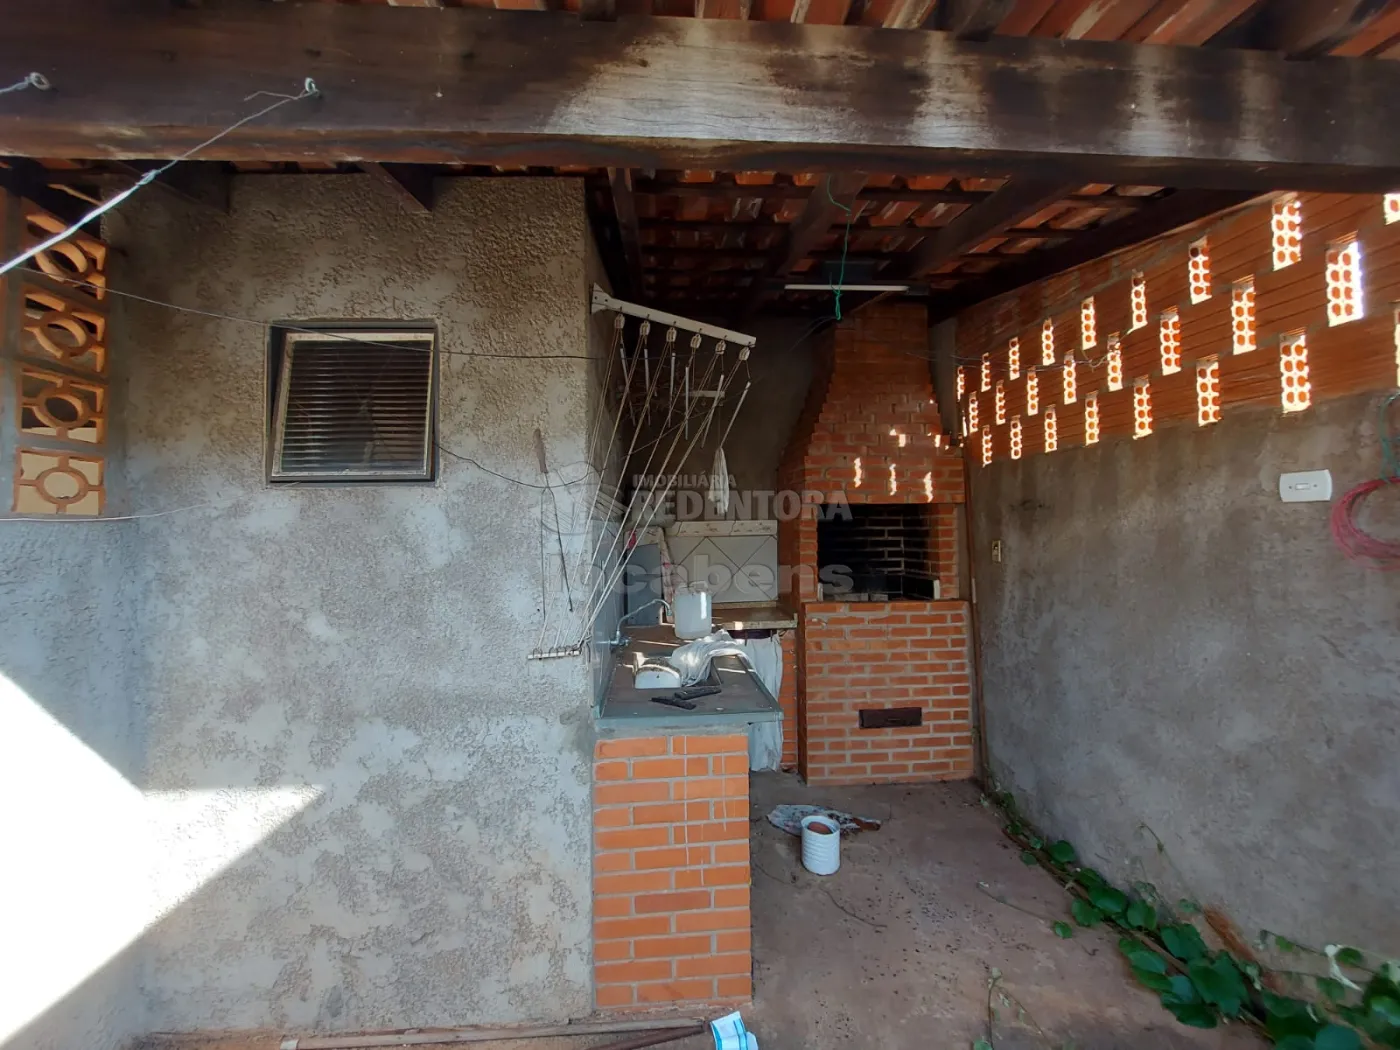 Comprar Casa / Padrão em São José do Rio Preto apenas R$ 200.000,00 - Foto 7